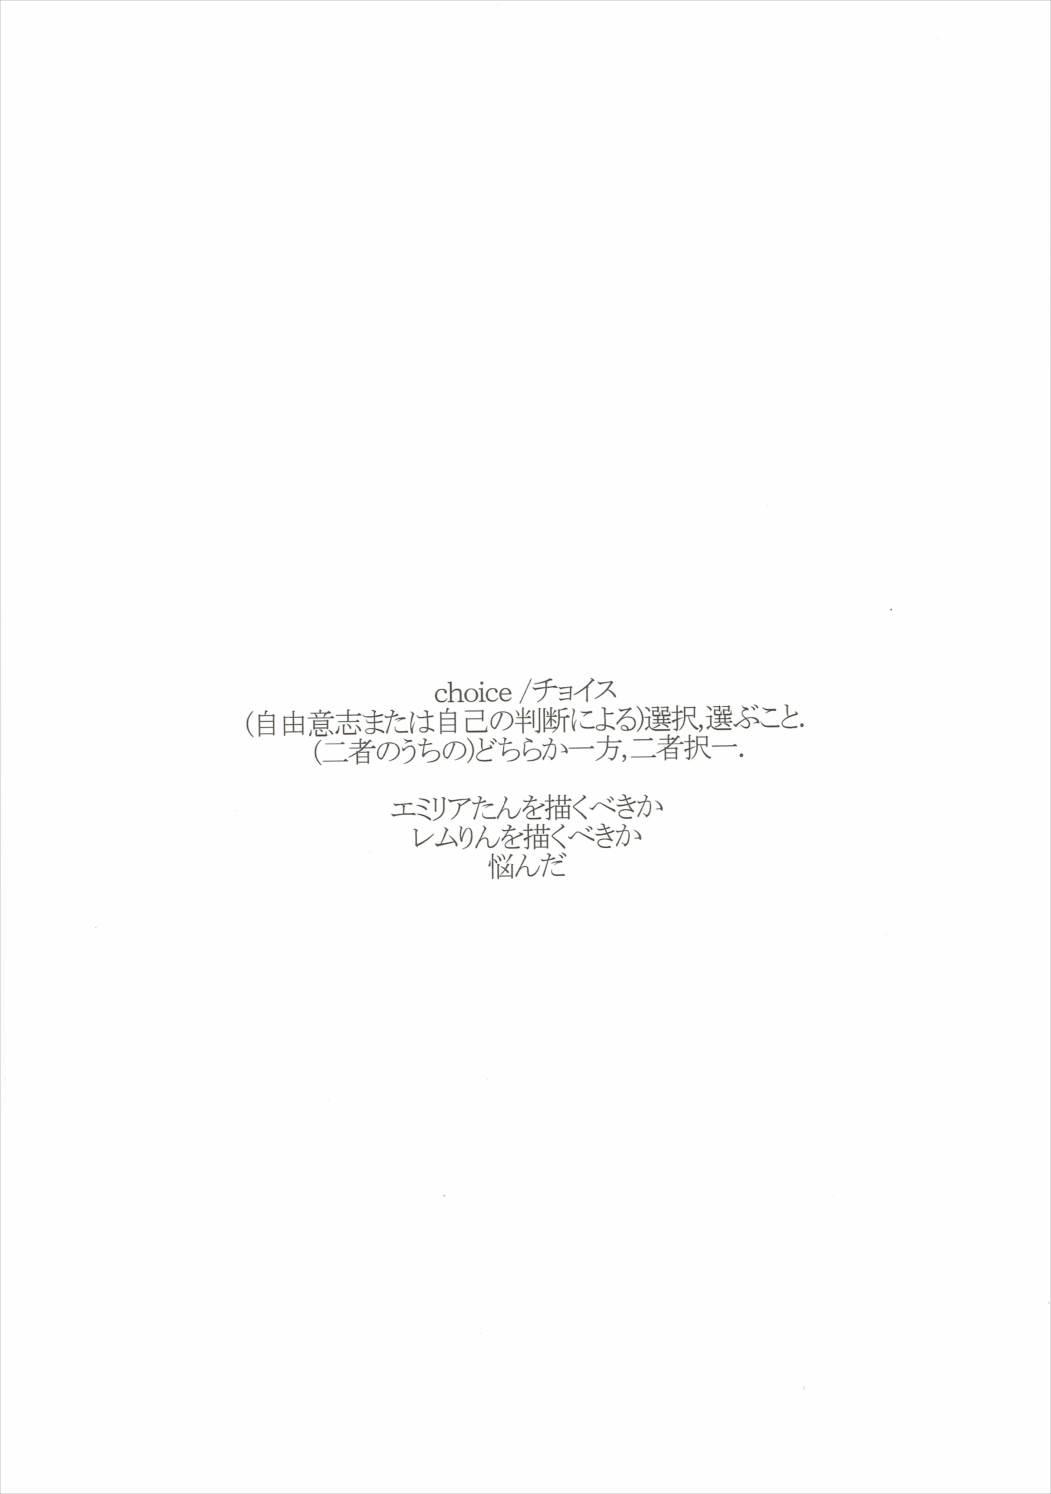 Old Man CHOICE - Re zero kara hajimeru isekai seikatsu Perfect Teen - Page 3